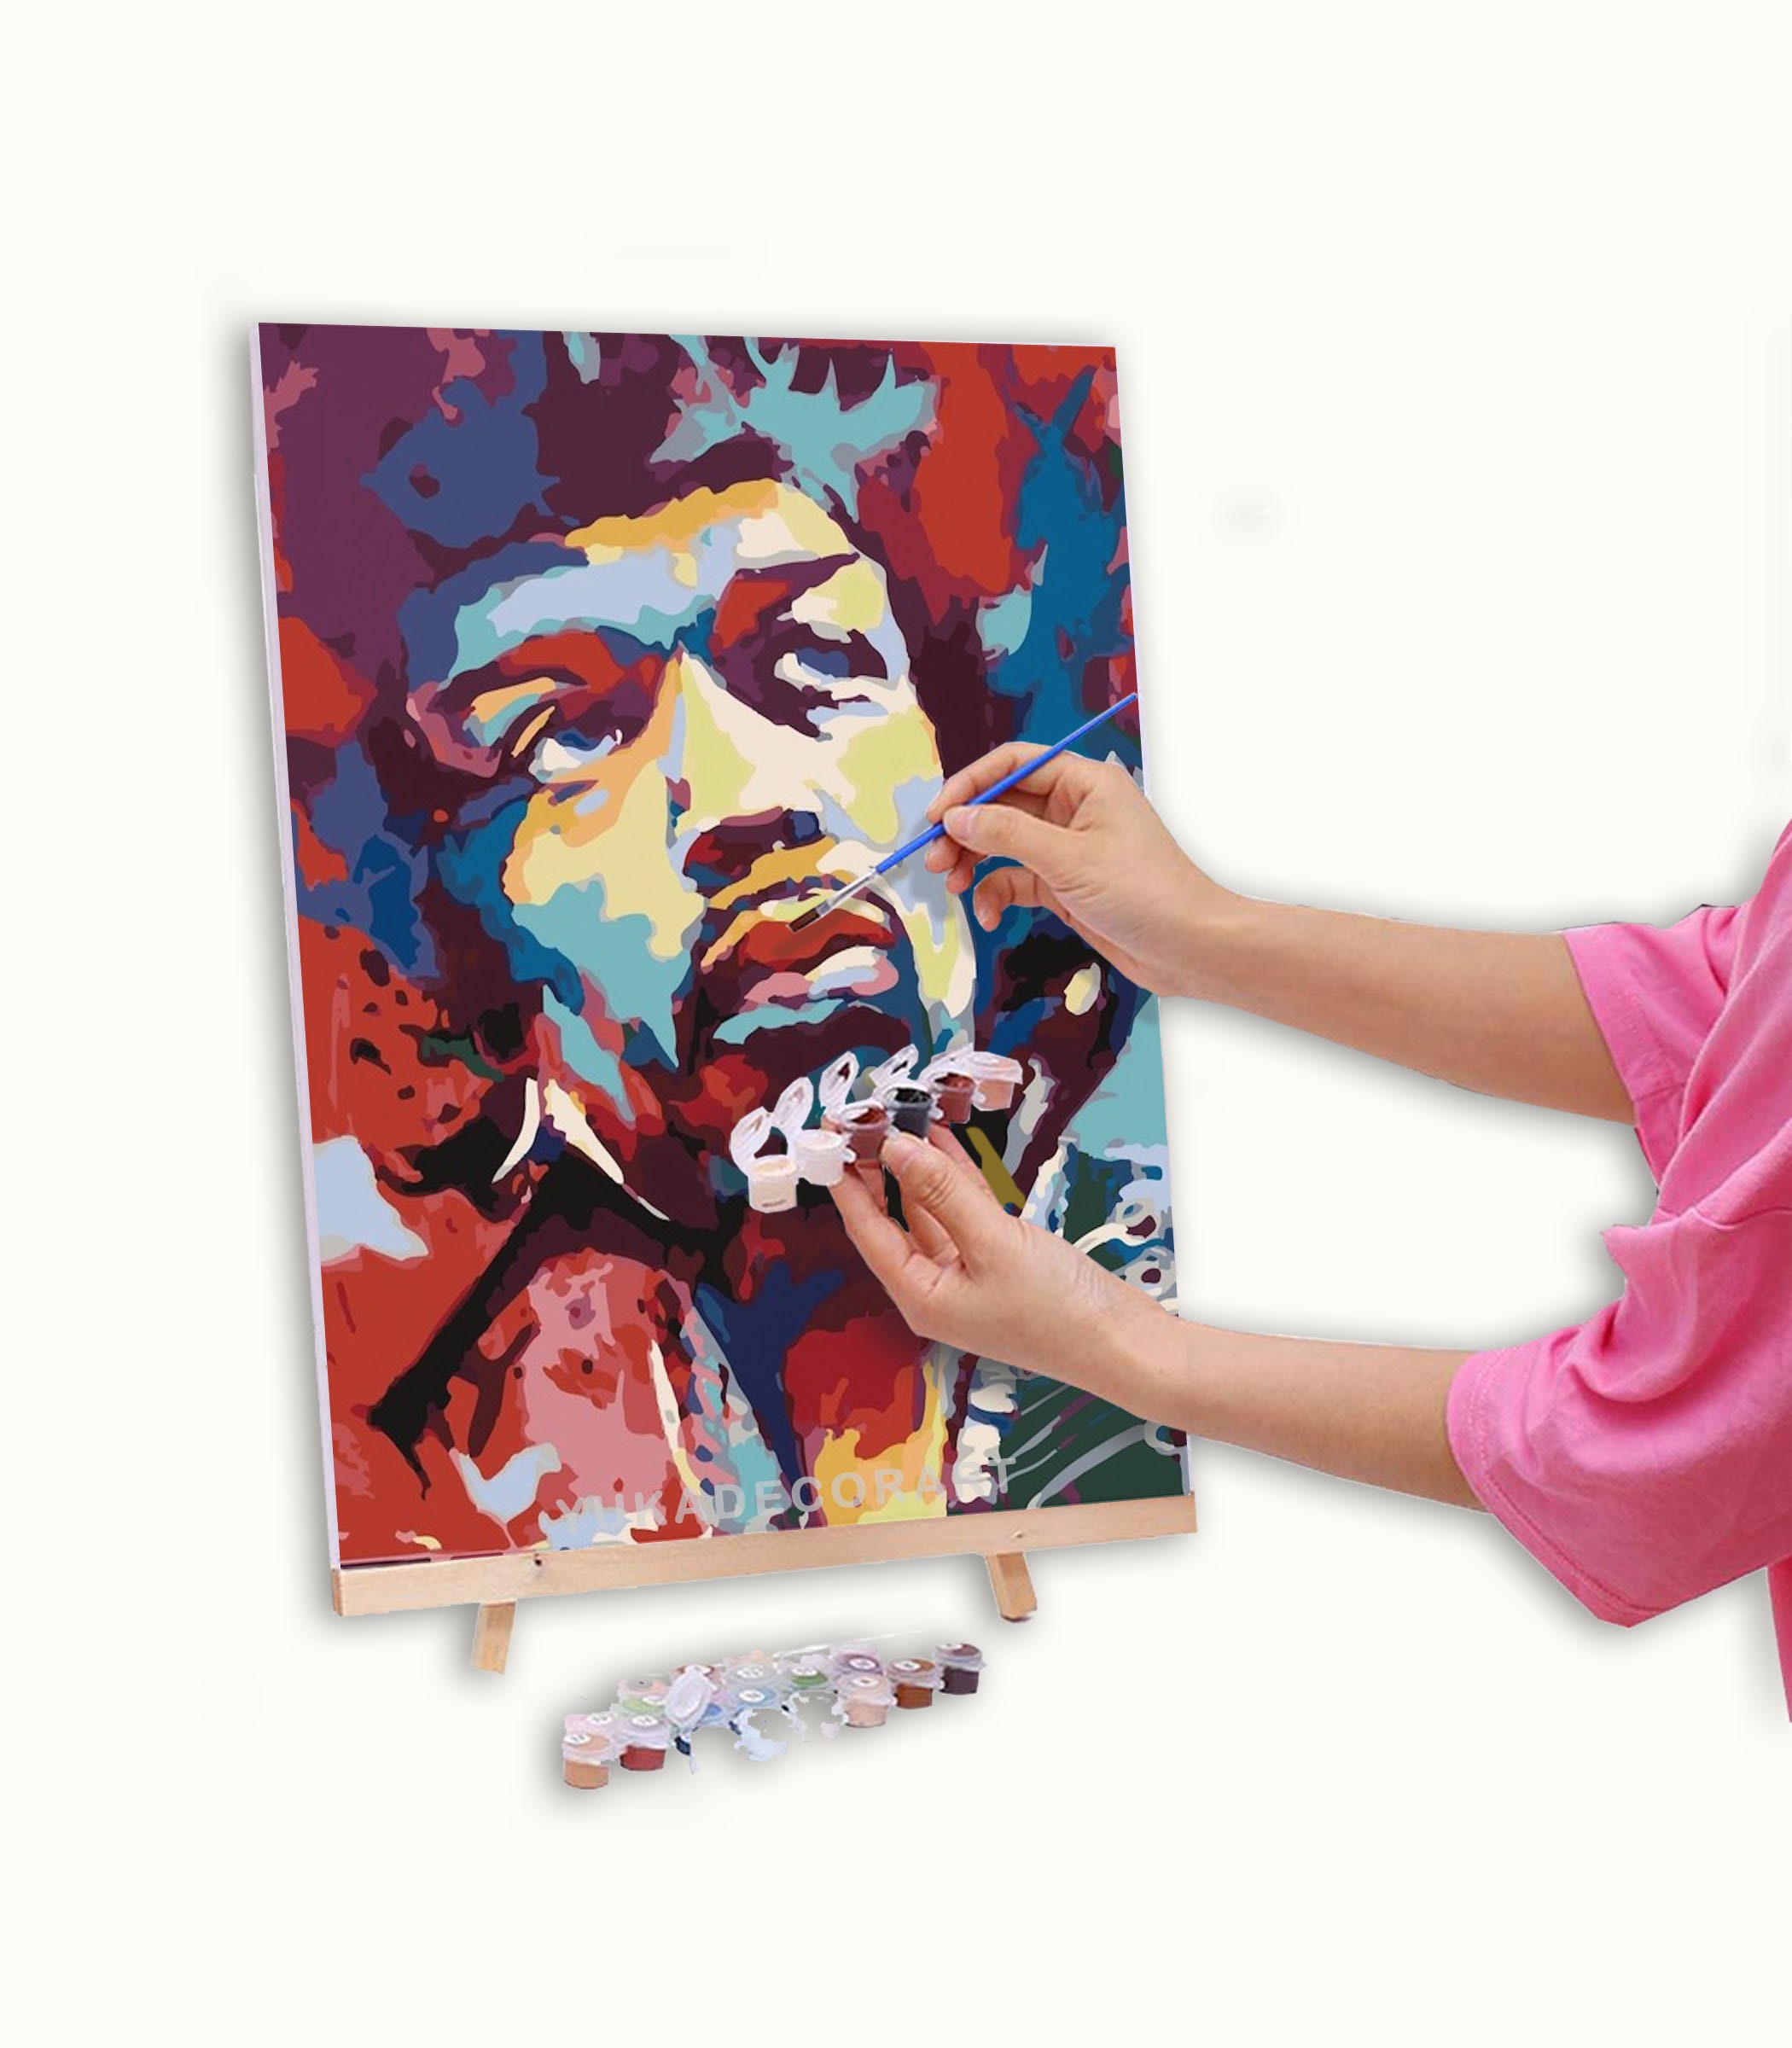 PEINTURE par NUMÉRO Kit Adulte, Bob Marley Abstrait Multicolore, Facile DIY  Débutants Peinture Acrylique Kit, Wall Art Home Decor Cadeau -  France